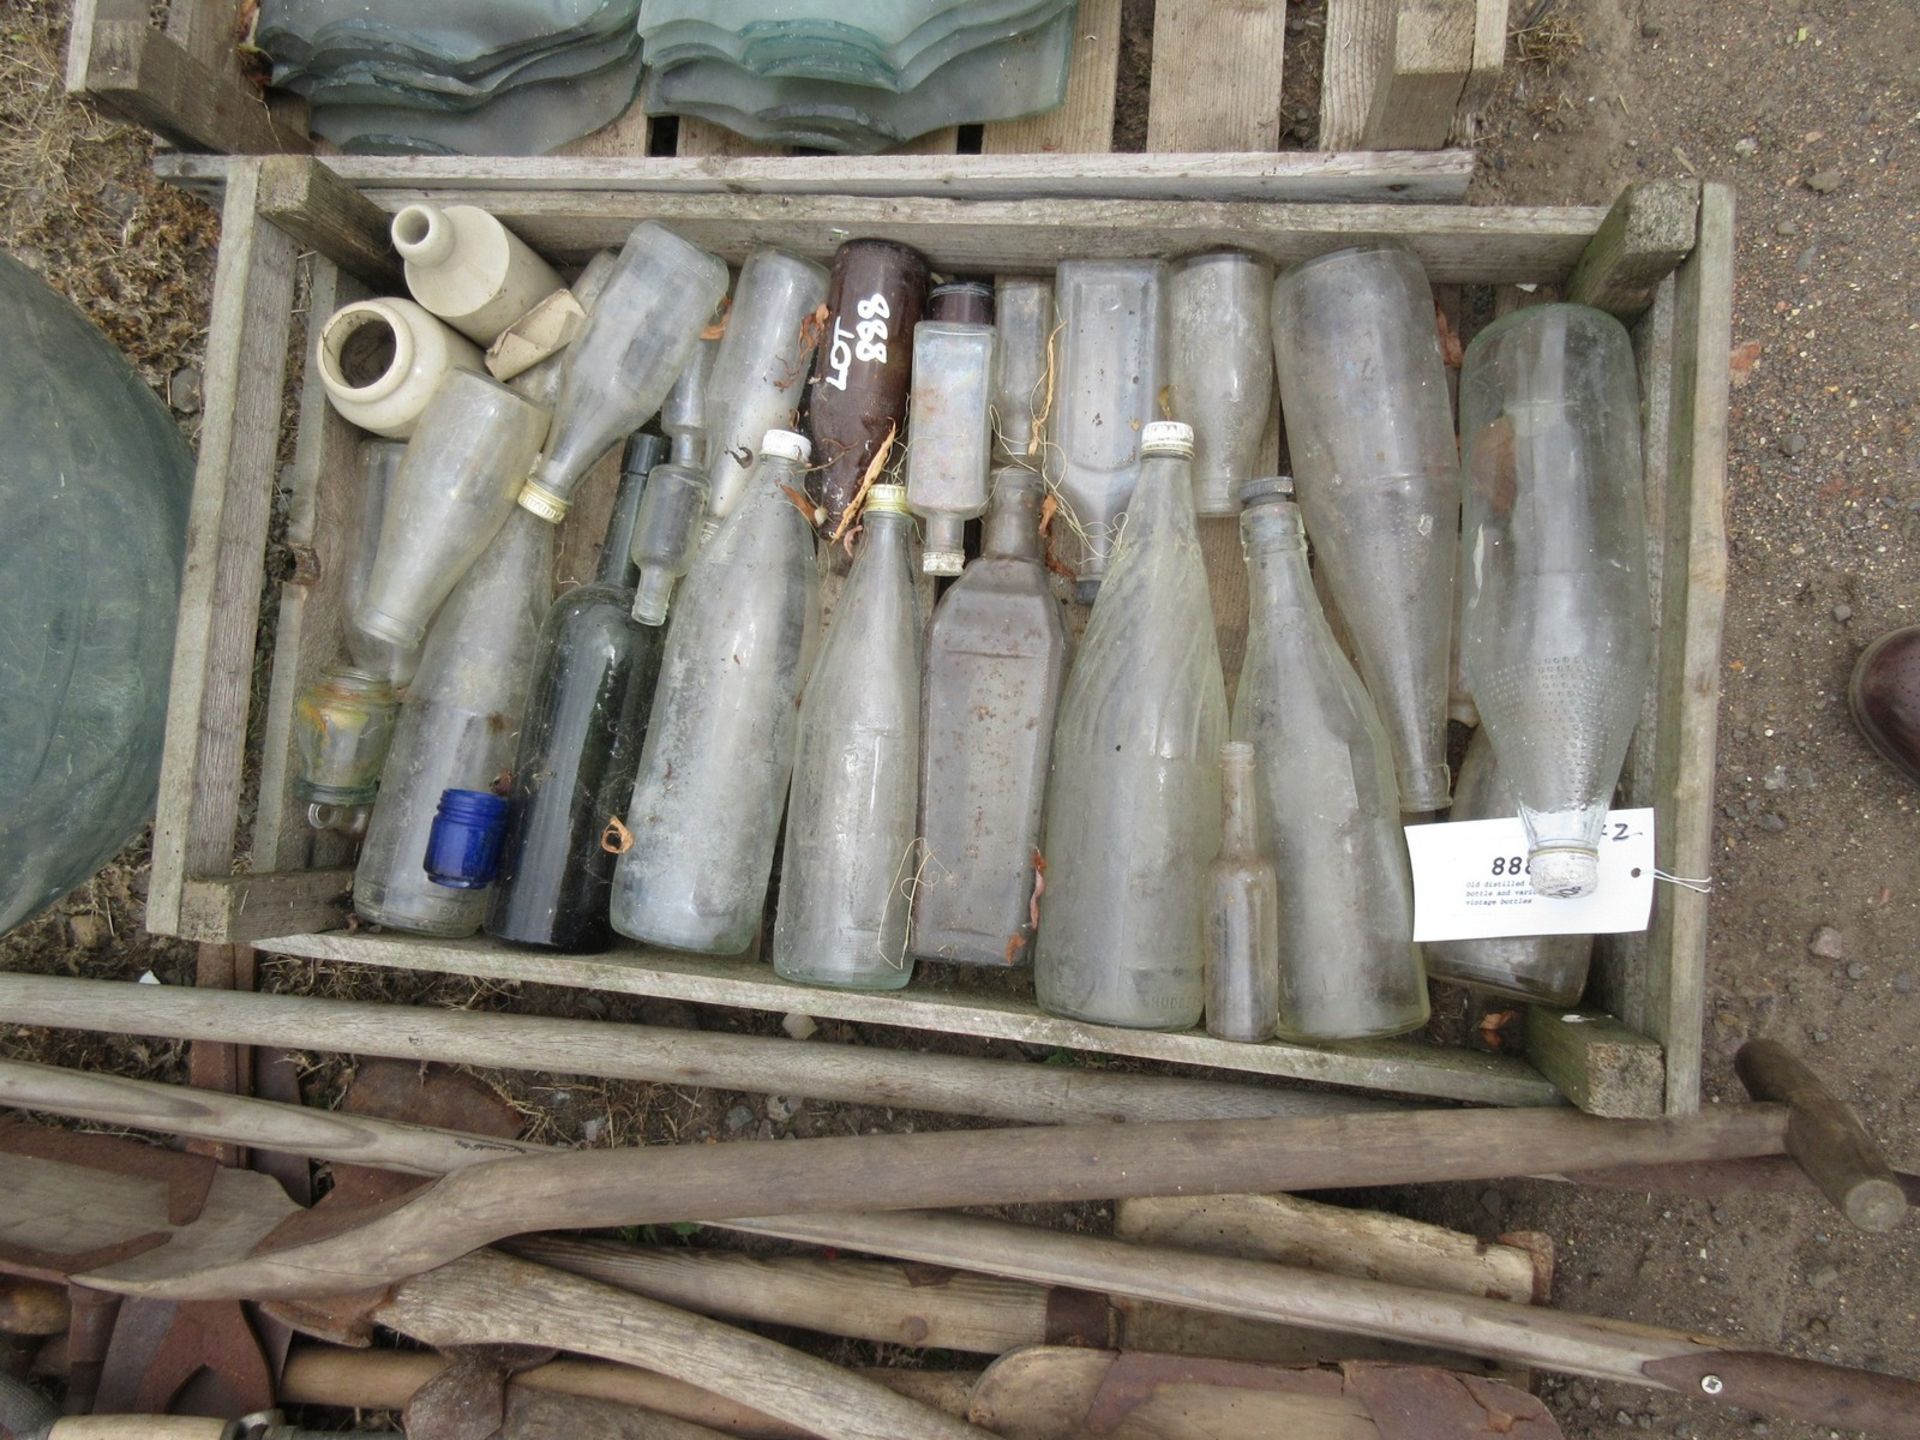 Old distilled water bottle and various vintage bottles